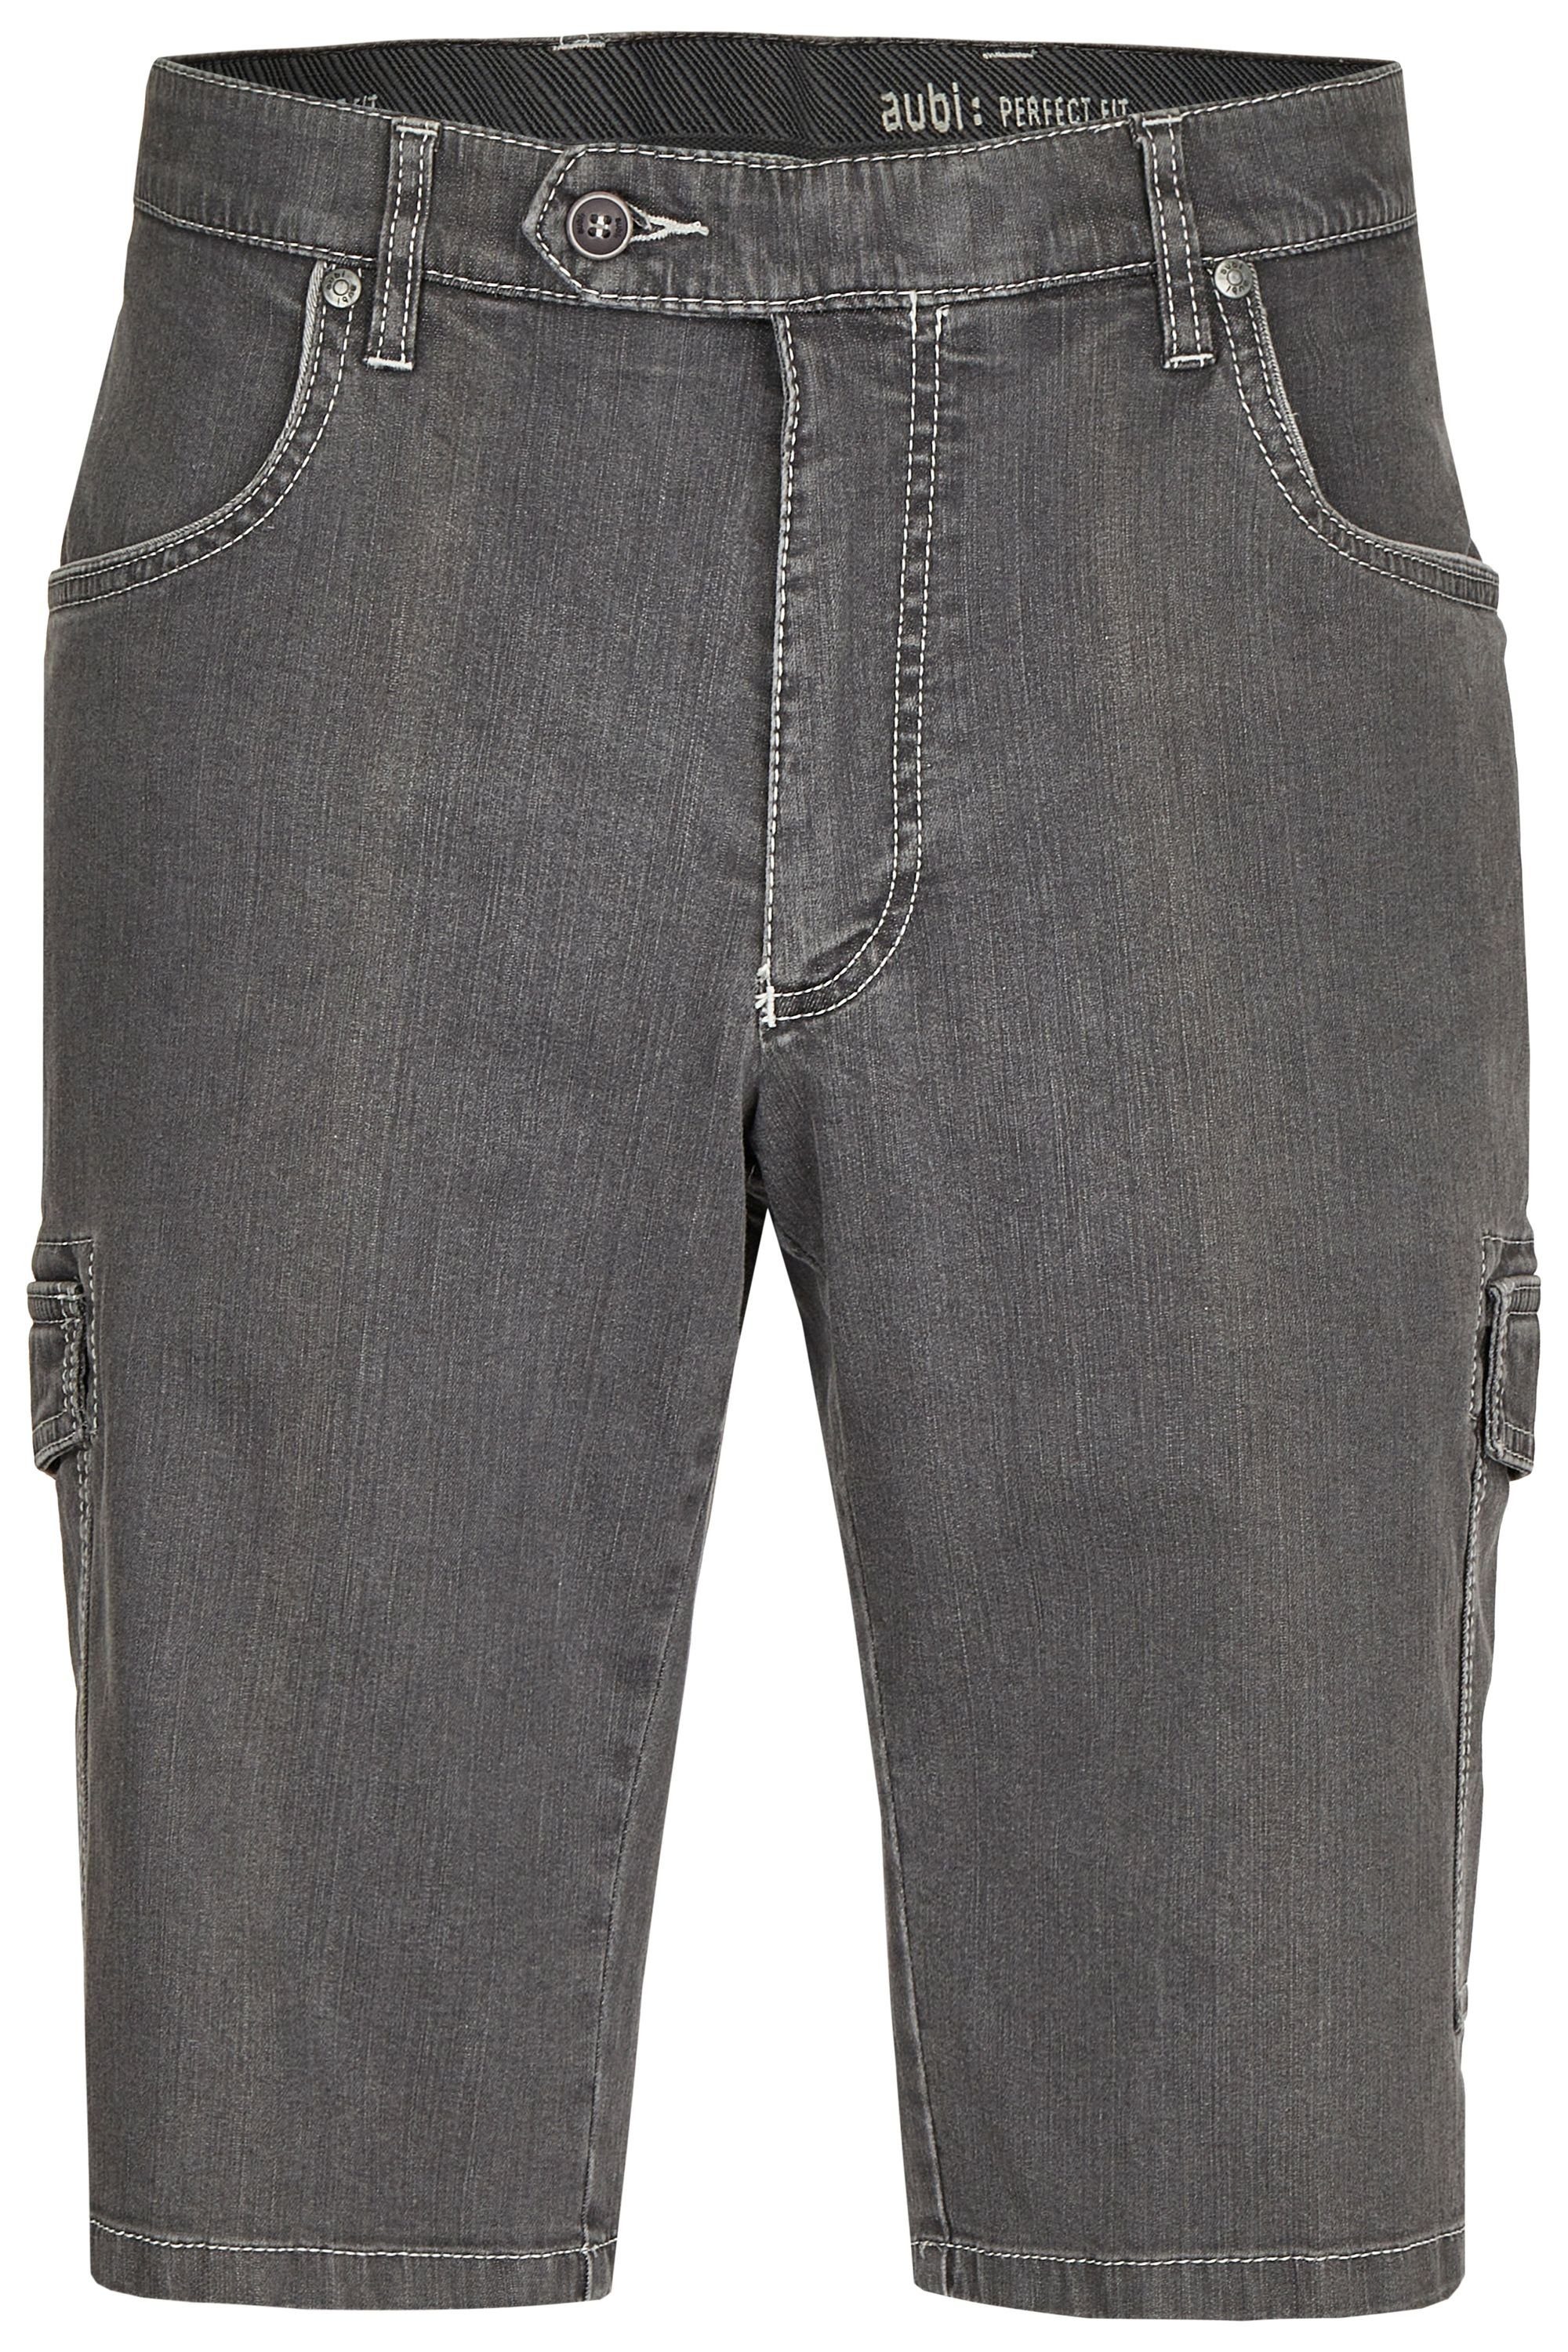 aubi: Bequeme Jeans aubi Perfect Fit Herren Sommer Jeans Cargo Shorts Stretch aus Baumwolle High Flex Modell 616 grey (54)